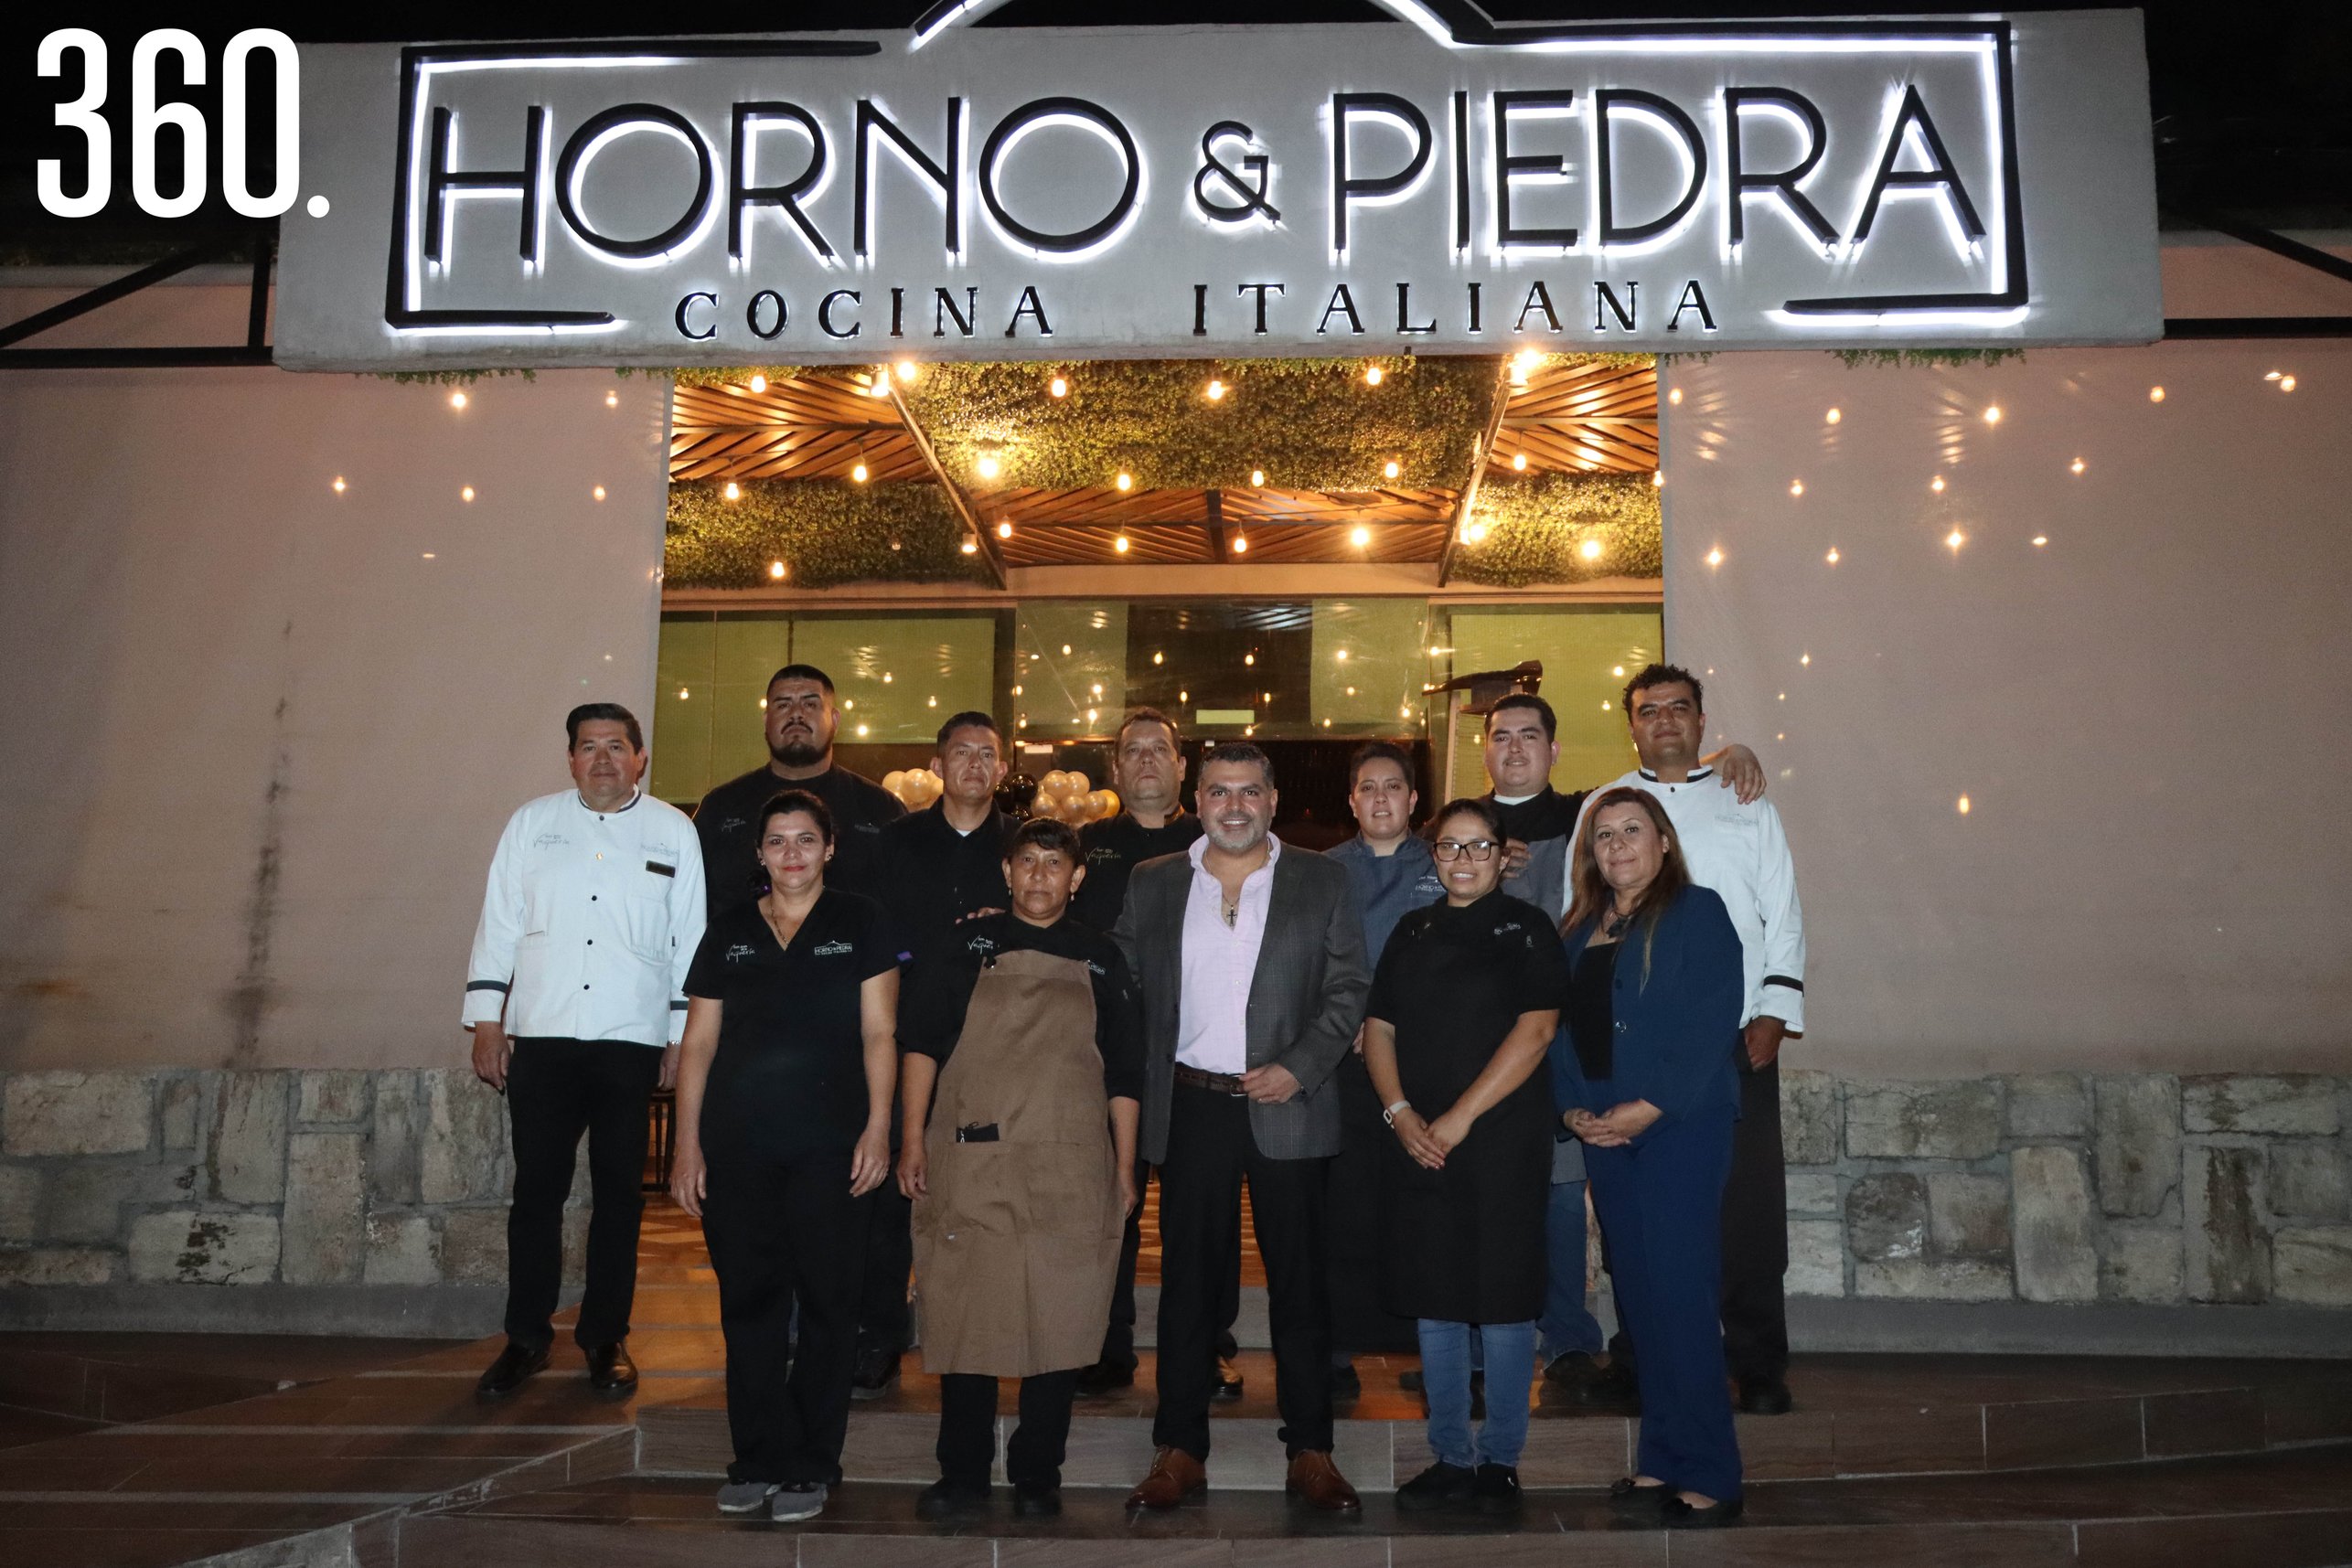 Pablo Abugarade acompañado por el personal del restaurante Horno & Piedra, Cocina Italiana.